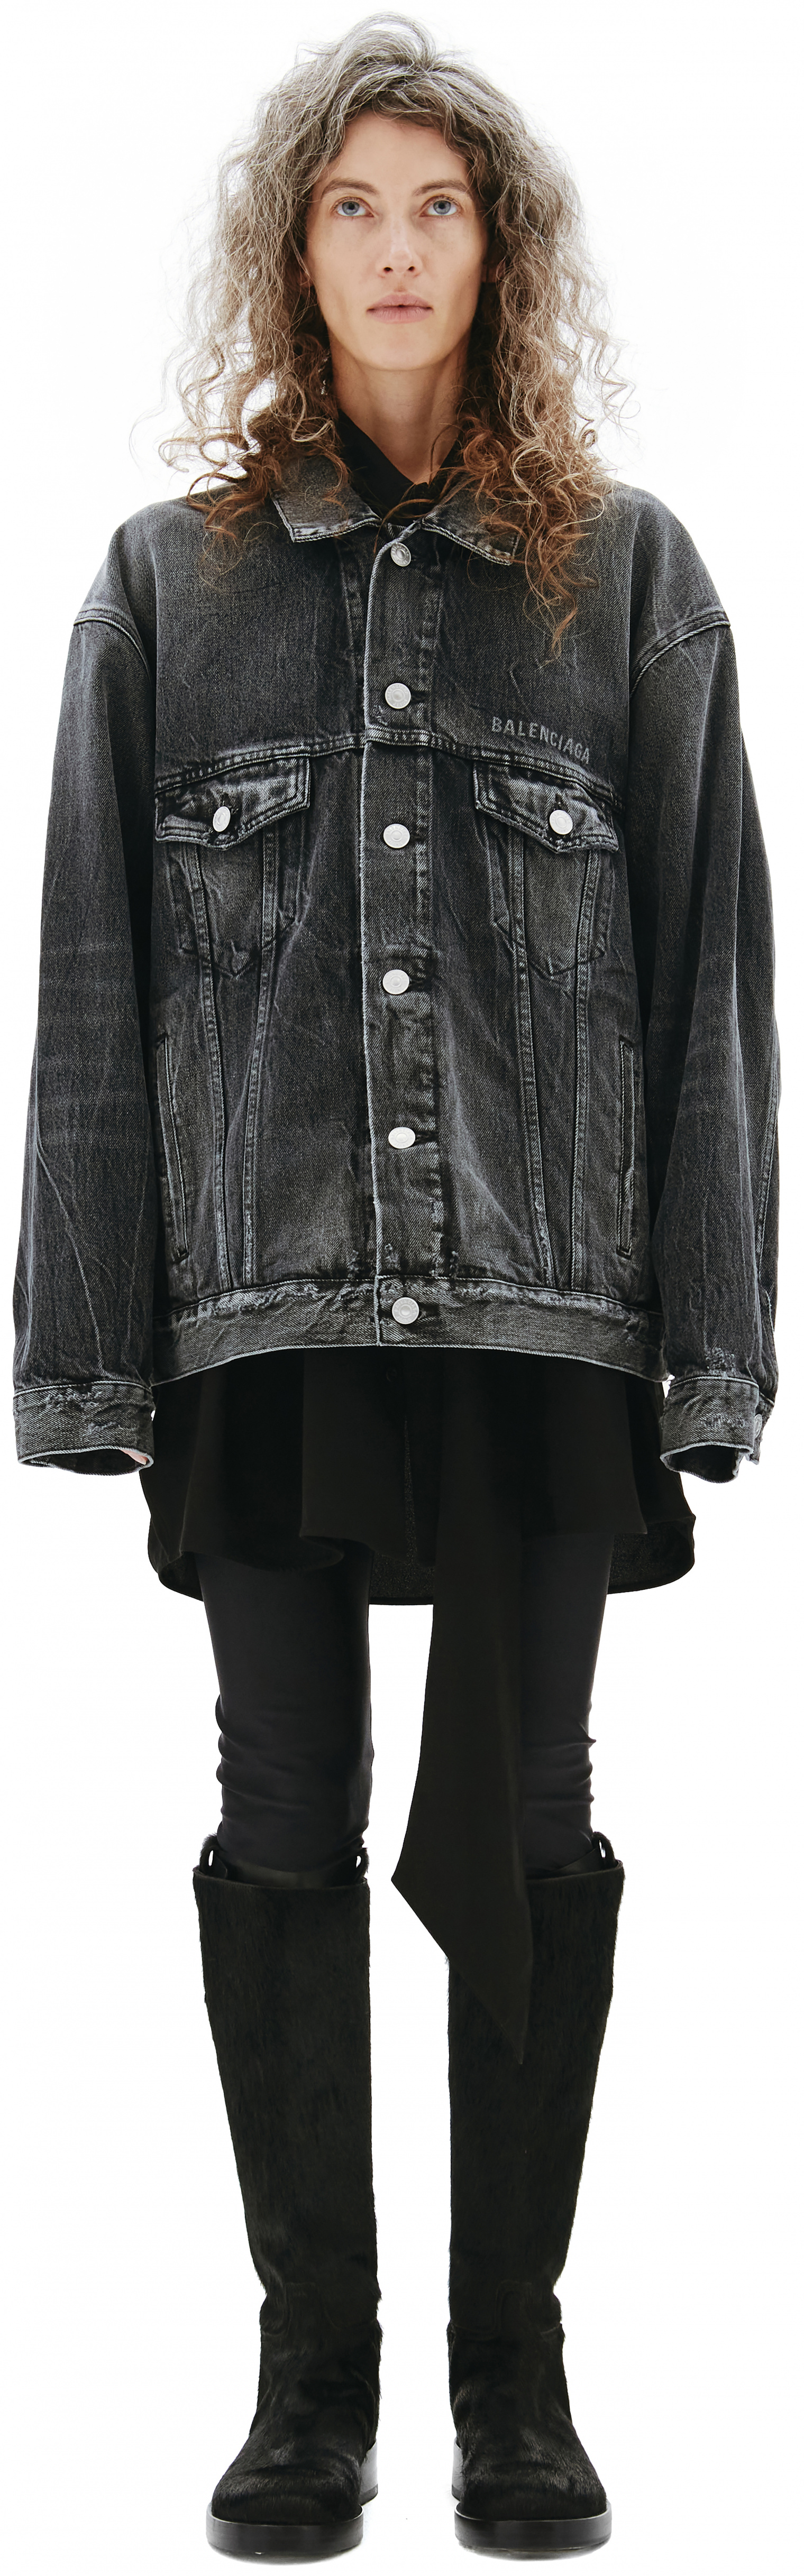 Женская серая джинсовая куртка с принтом на спине Balenciaga — купить за123 750 руб. в интернет-магазине SV77, арт. 657607/TBP47/1090